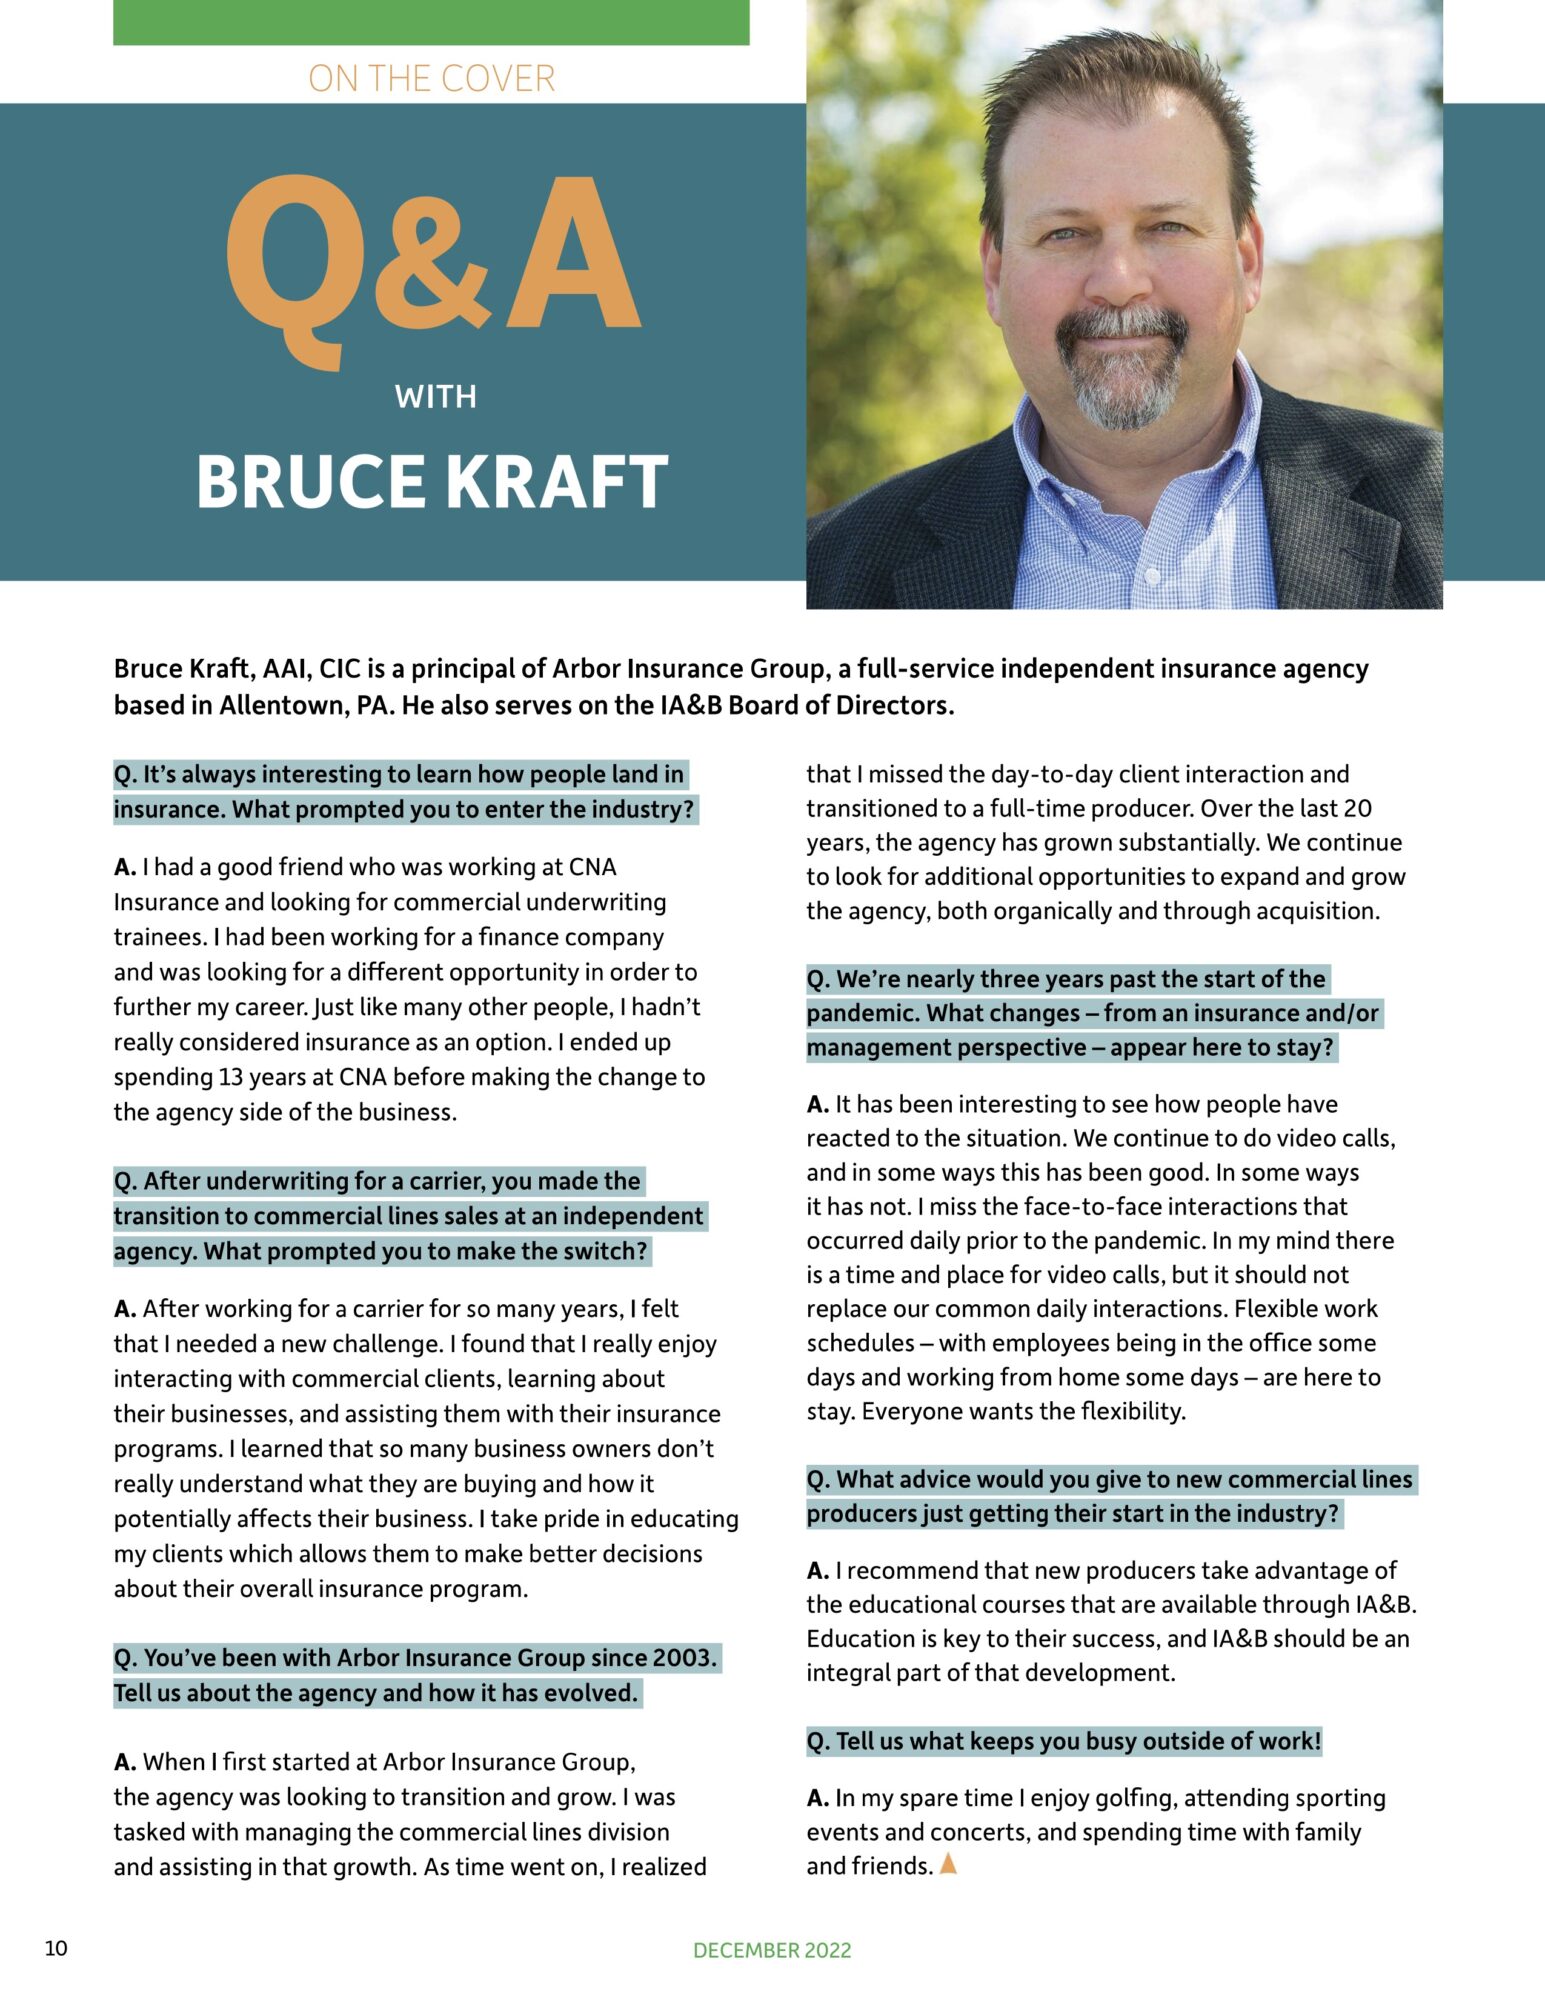 IA&B Interview - Bruce Kraft